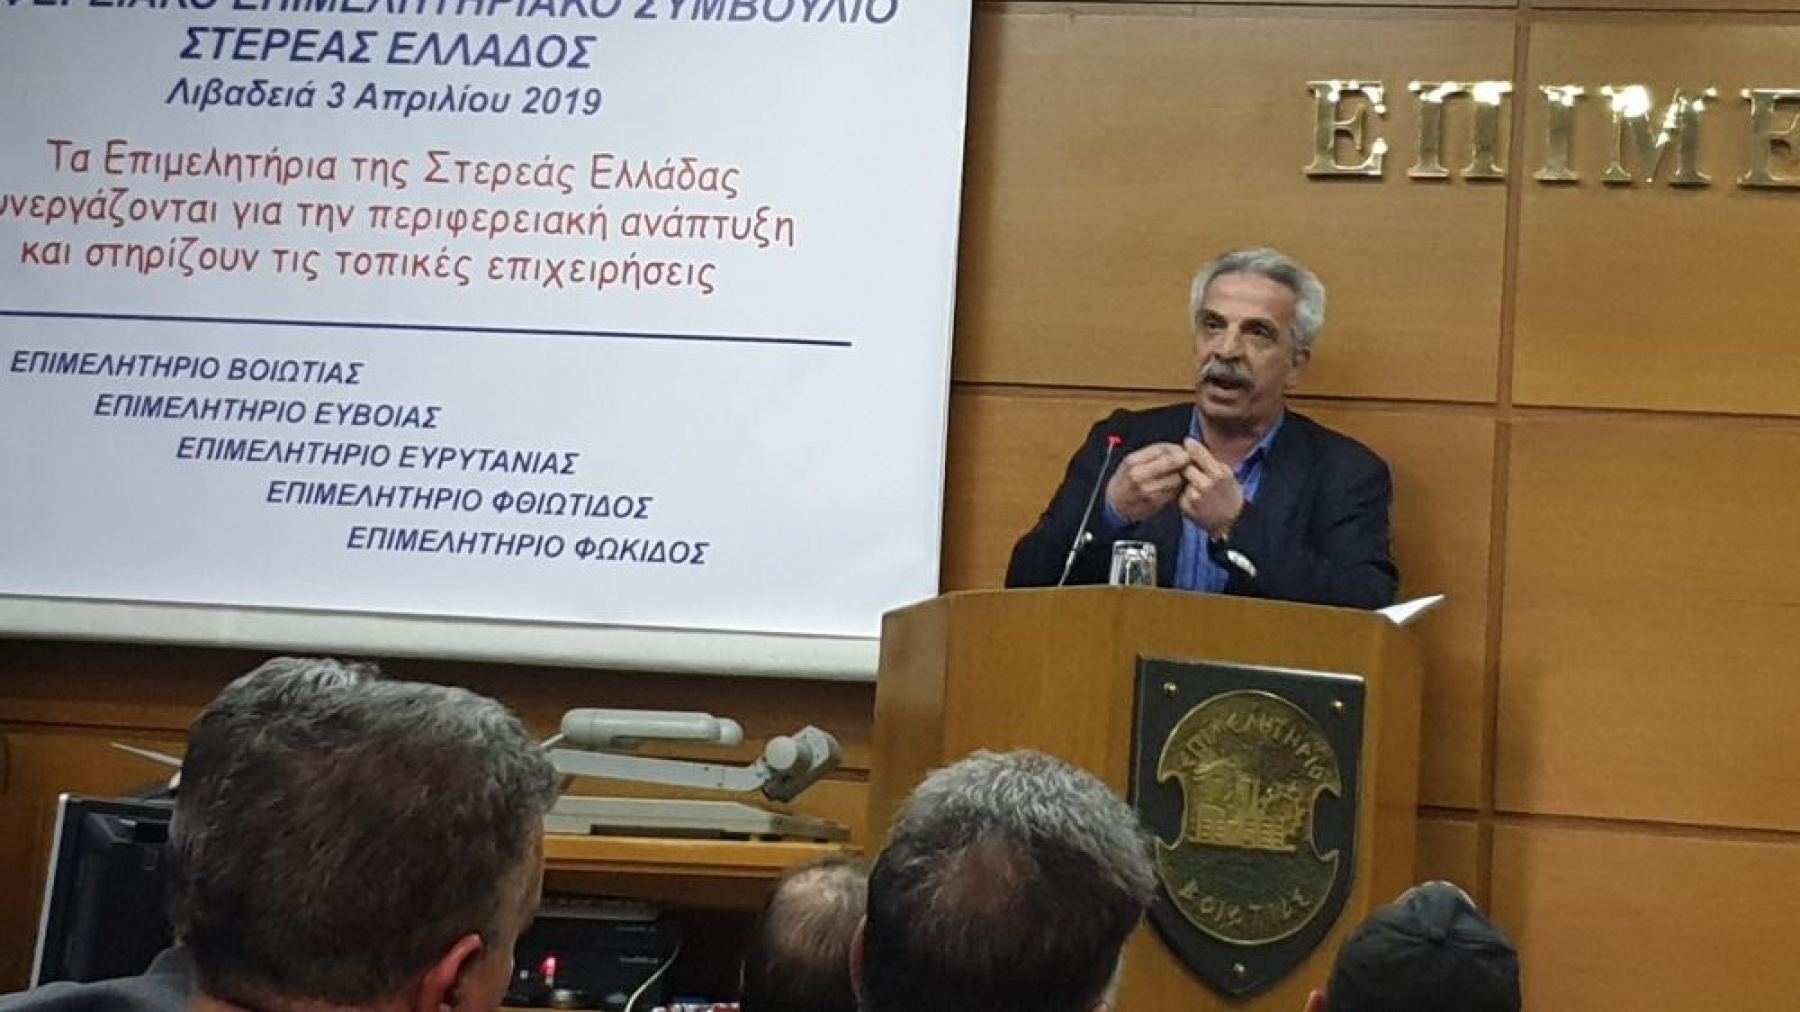 Ο Δημήτρης Αναγνωστάκης στη συνεδρίαση του Περιφερειακού Επιμελητηριακού Συμβουλίου Στερεάς